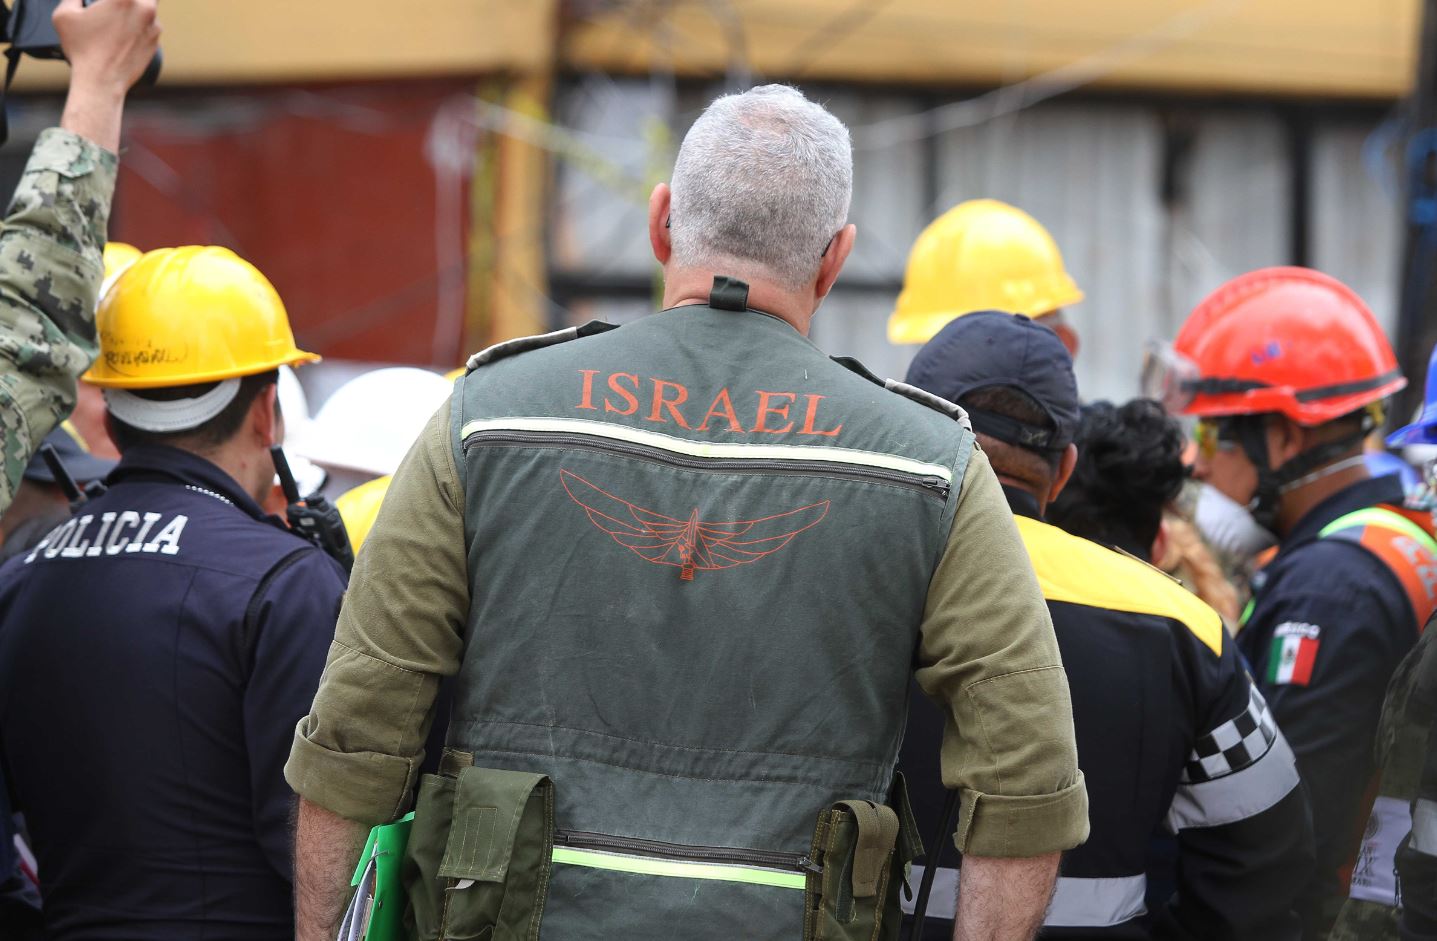 Los equipos de rescate de Israel se unieron a las labores en la CDMX.